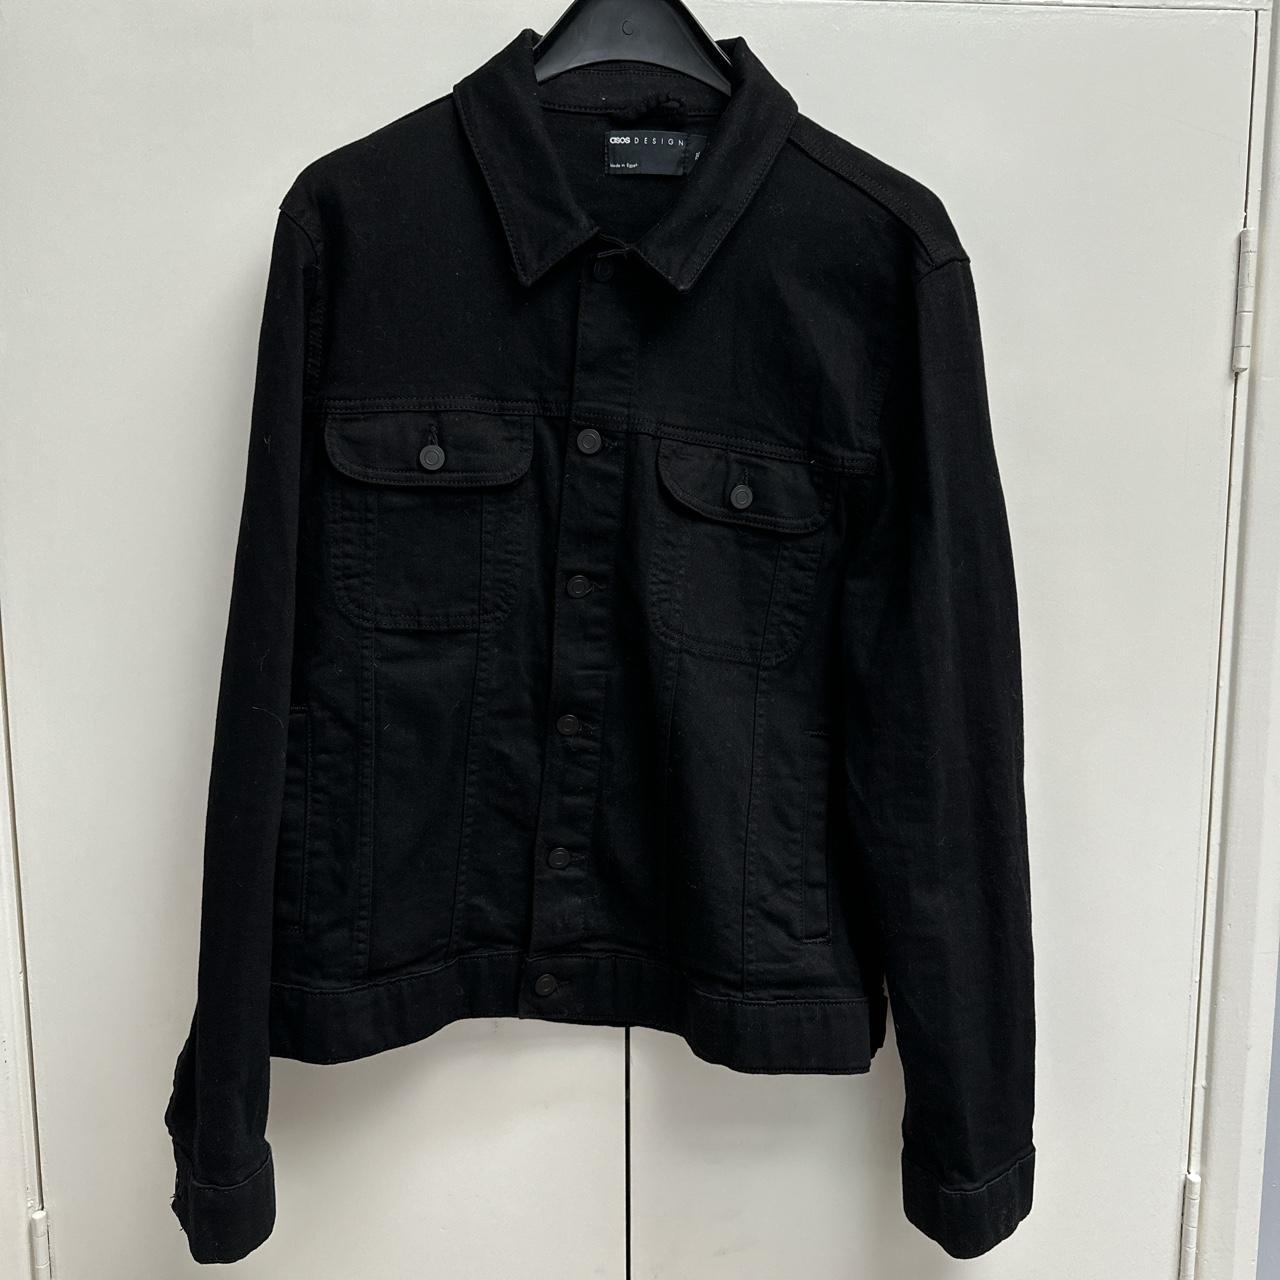 ASOS black trucker jacket cotton size 2XL Egyptian... - Depop